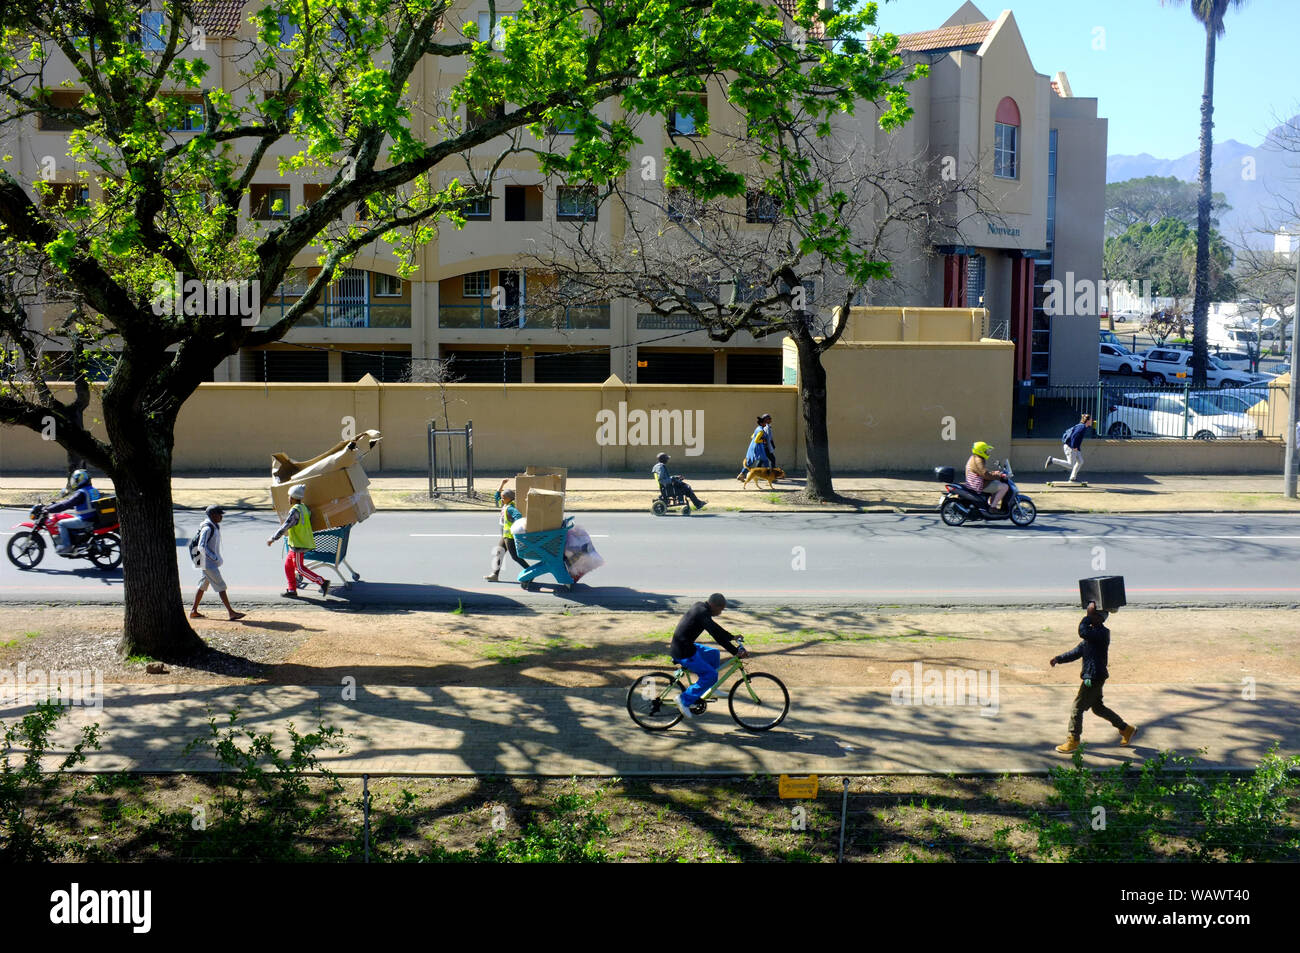 Una scena di strada nel sud africana di città universitaria di Stellenbosch Foto Stock